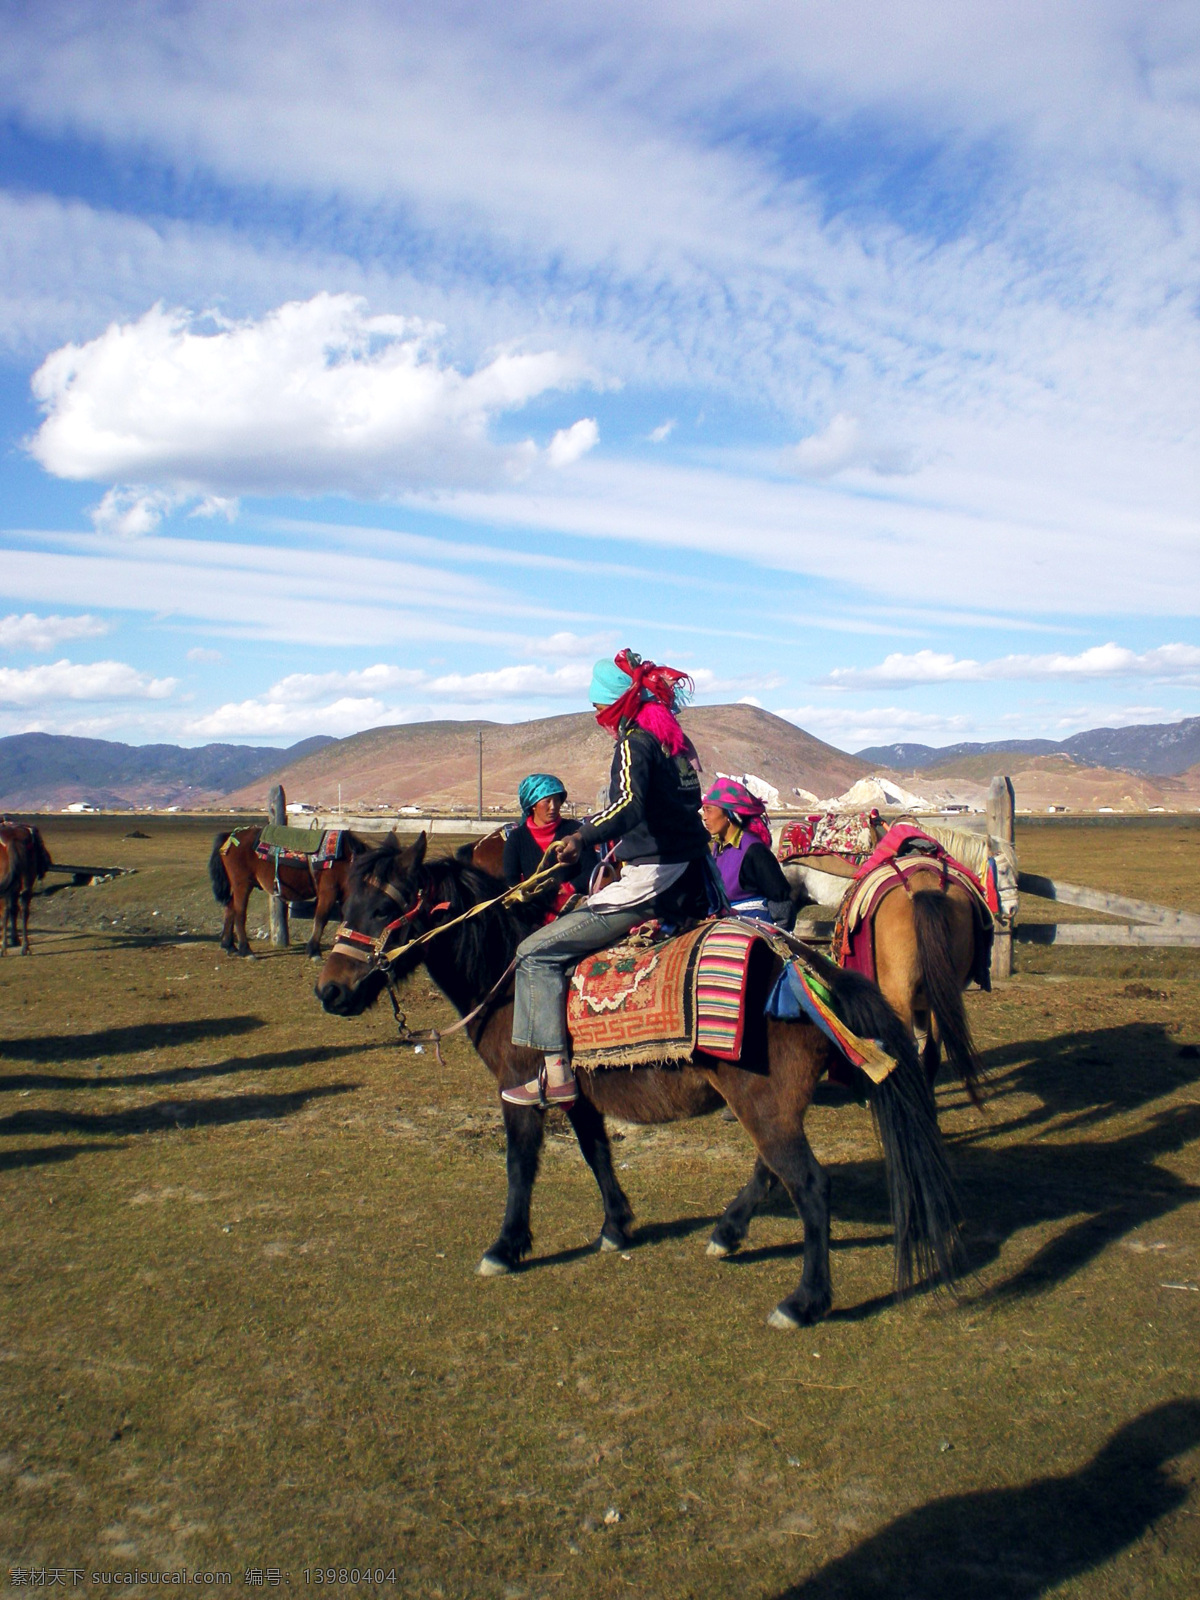 藏族人民 藏族牧民 藏族牧民骑马 西藏文化 西藏牧民 草原上骑马 草原 上 少数民族 人文景观 旅游摄影